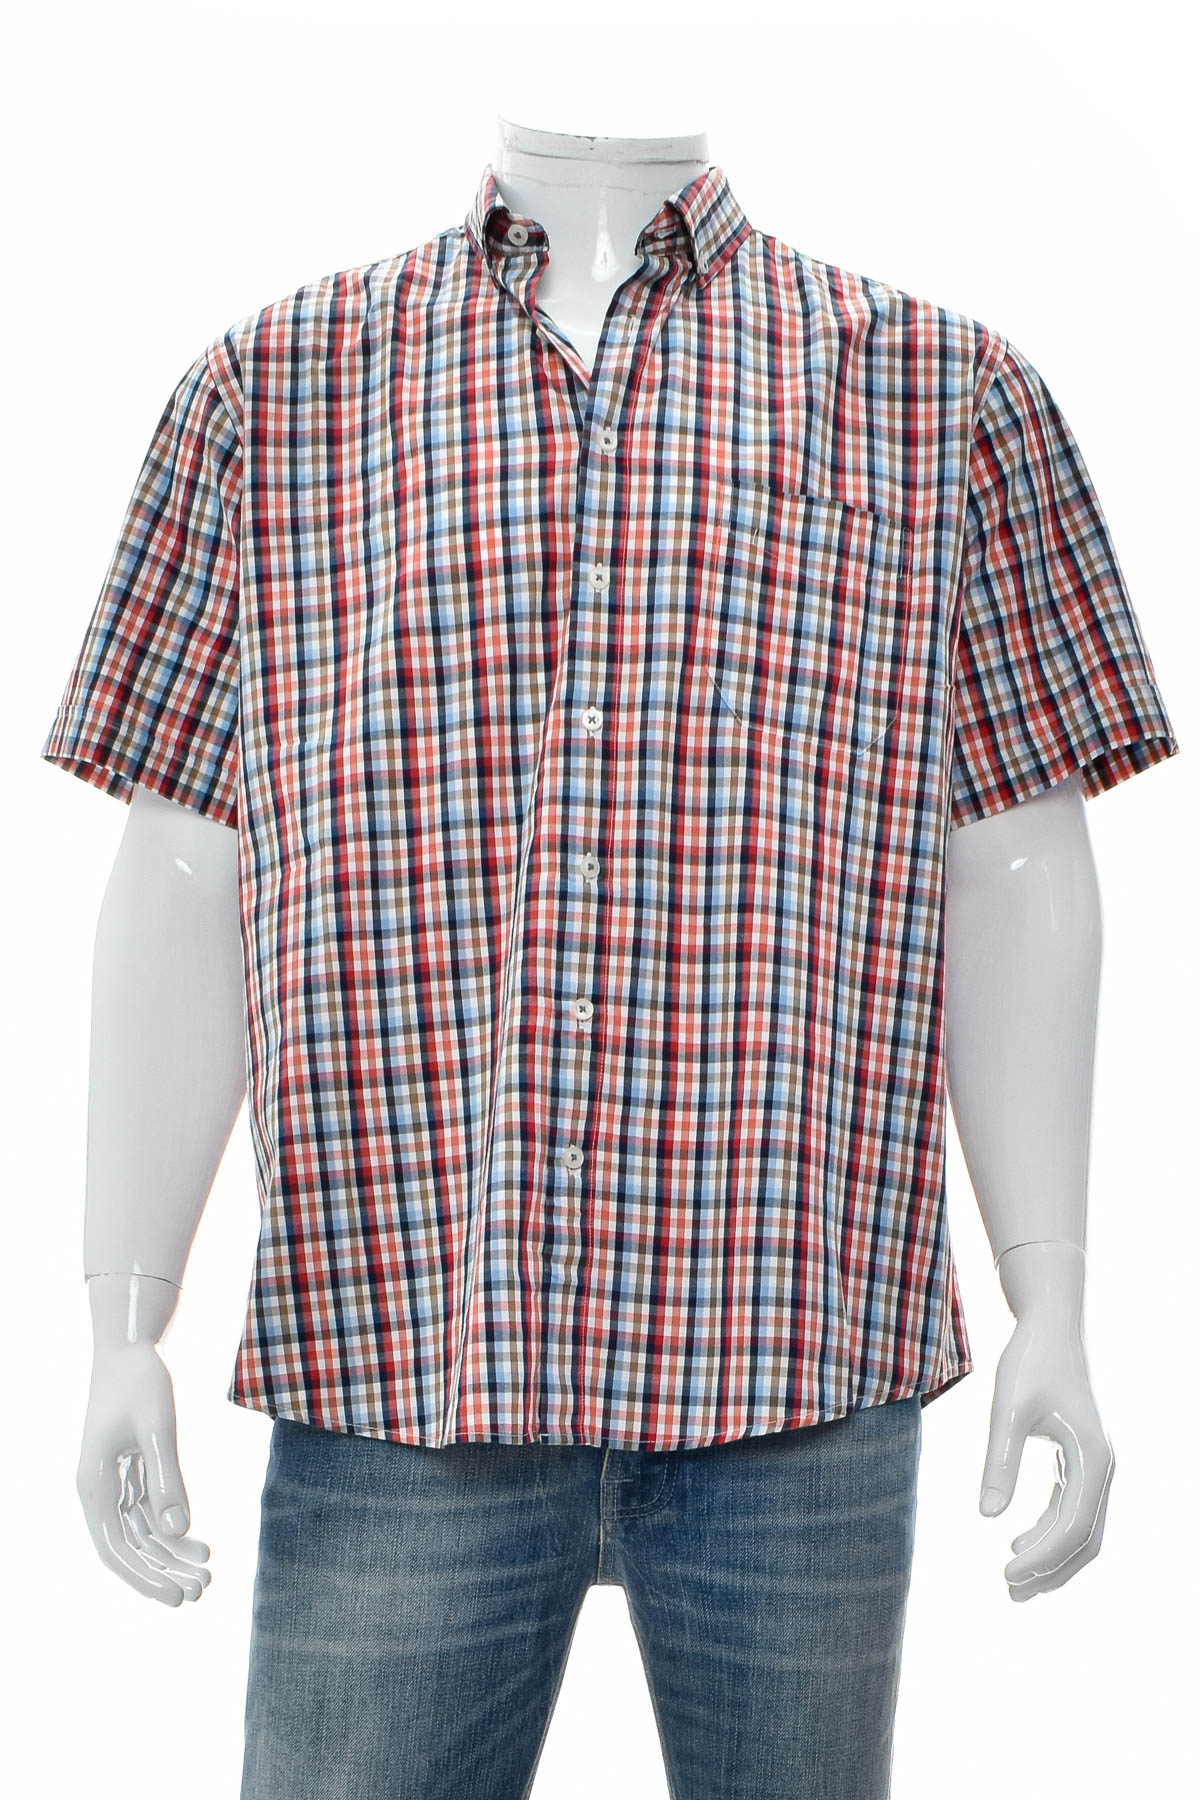 Ανδρικό πουκάμισο - Bexleys - 0